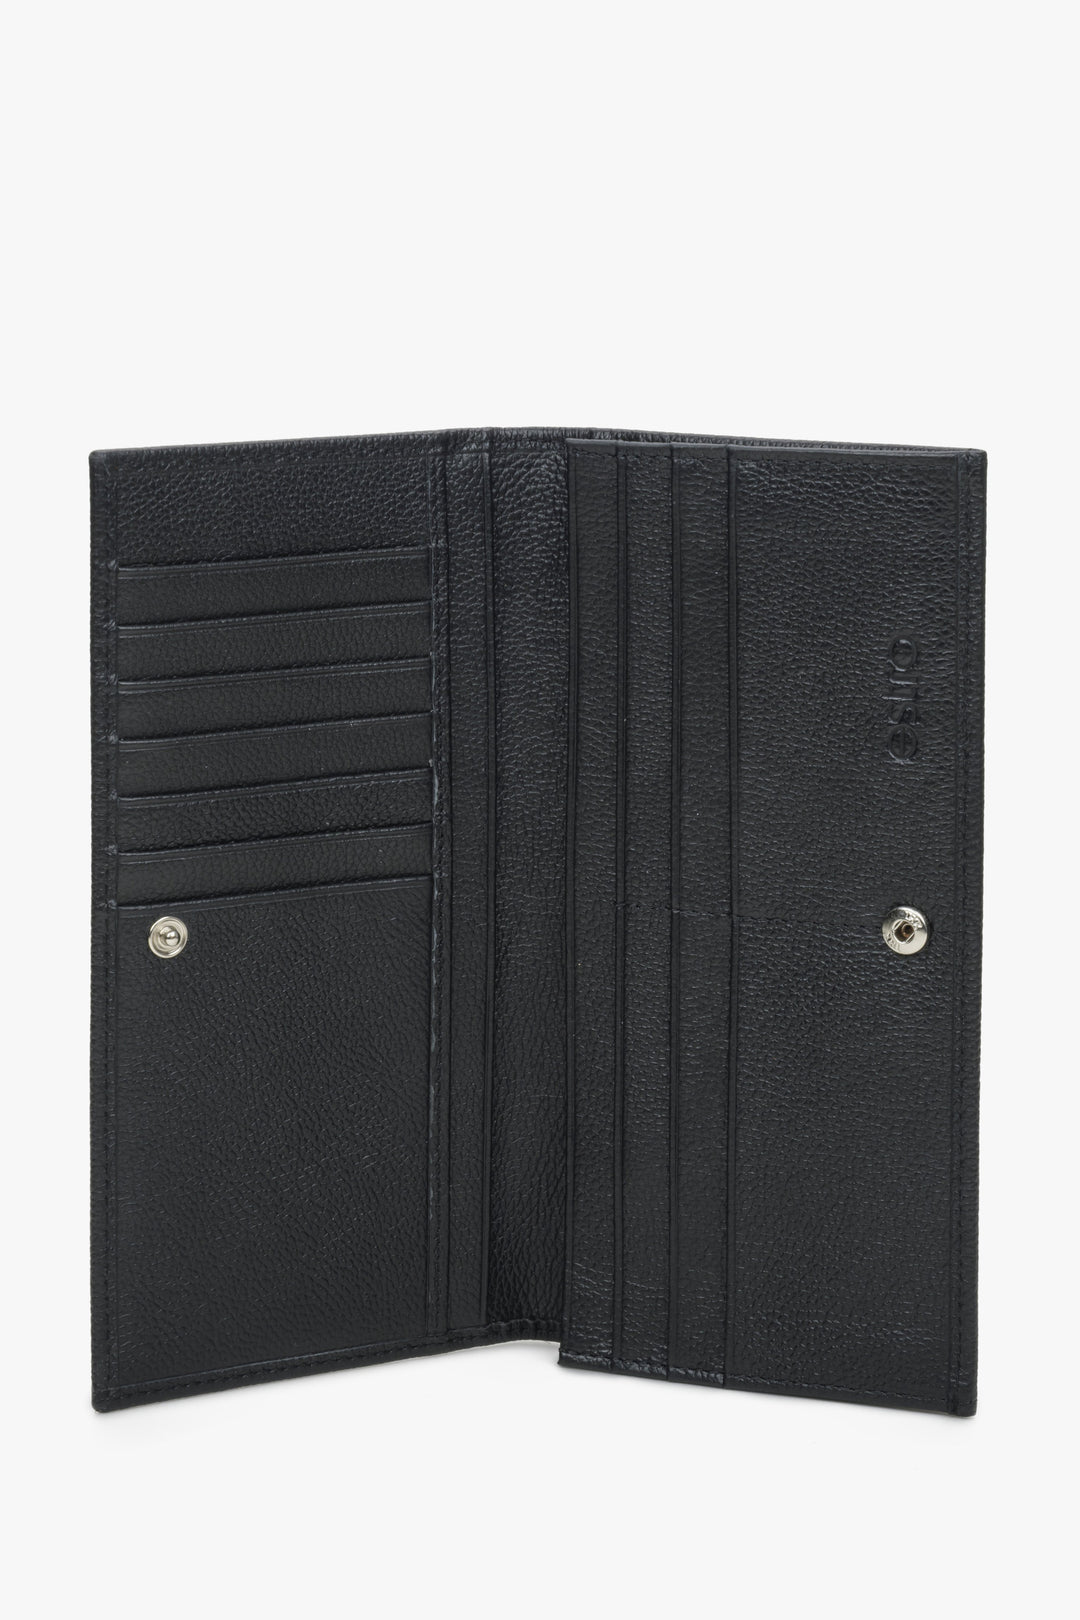 Estro men's compact black wallet - interior presentation.